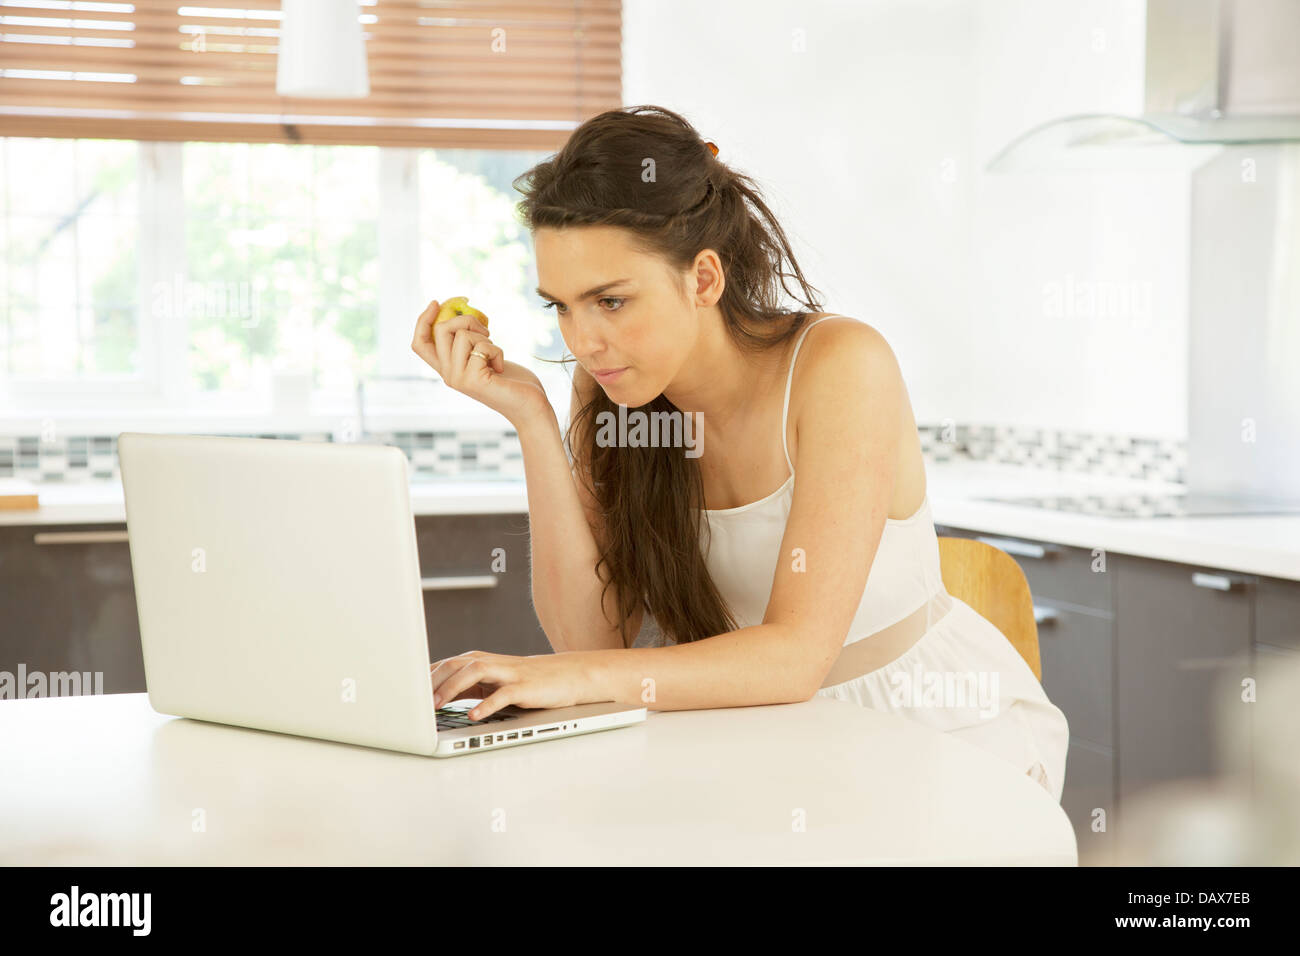 Junge Frau in einer Küche mit einem Laptop hält einen Apfel. Stockfoto